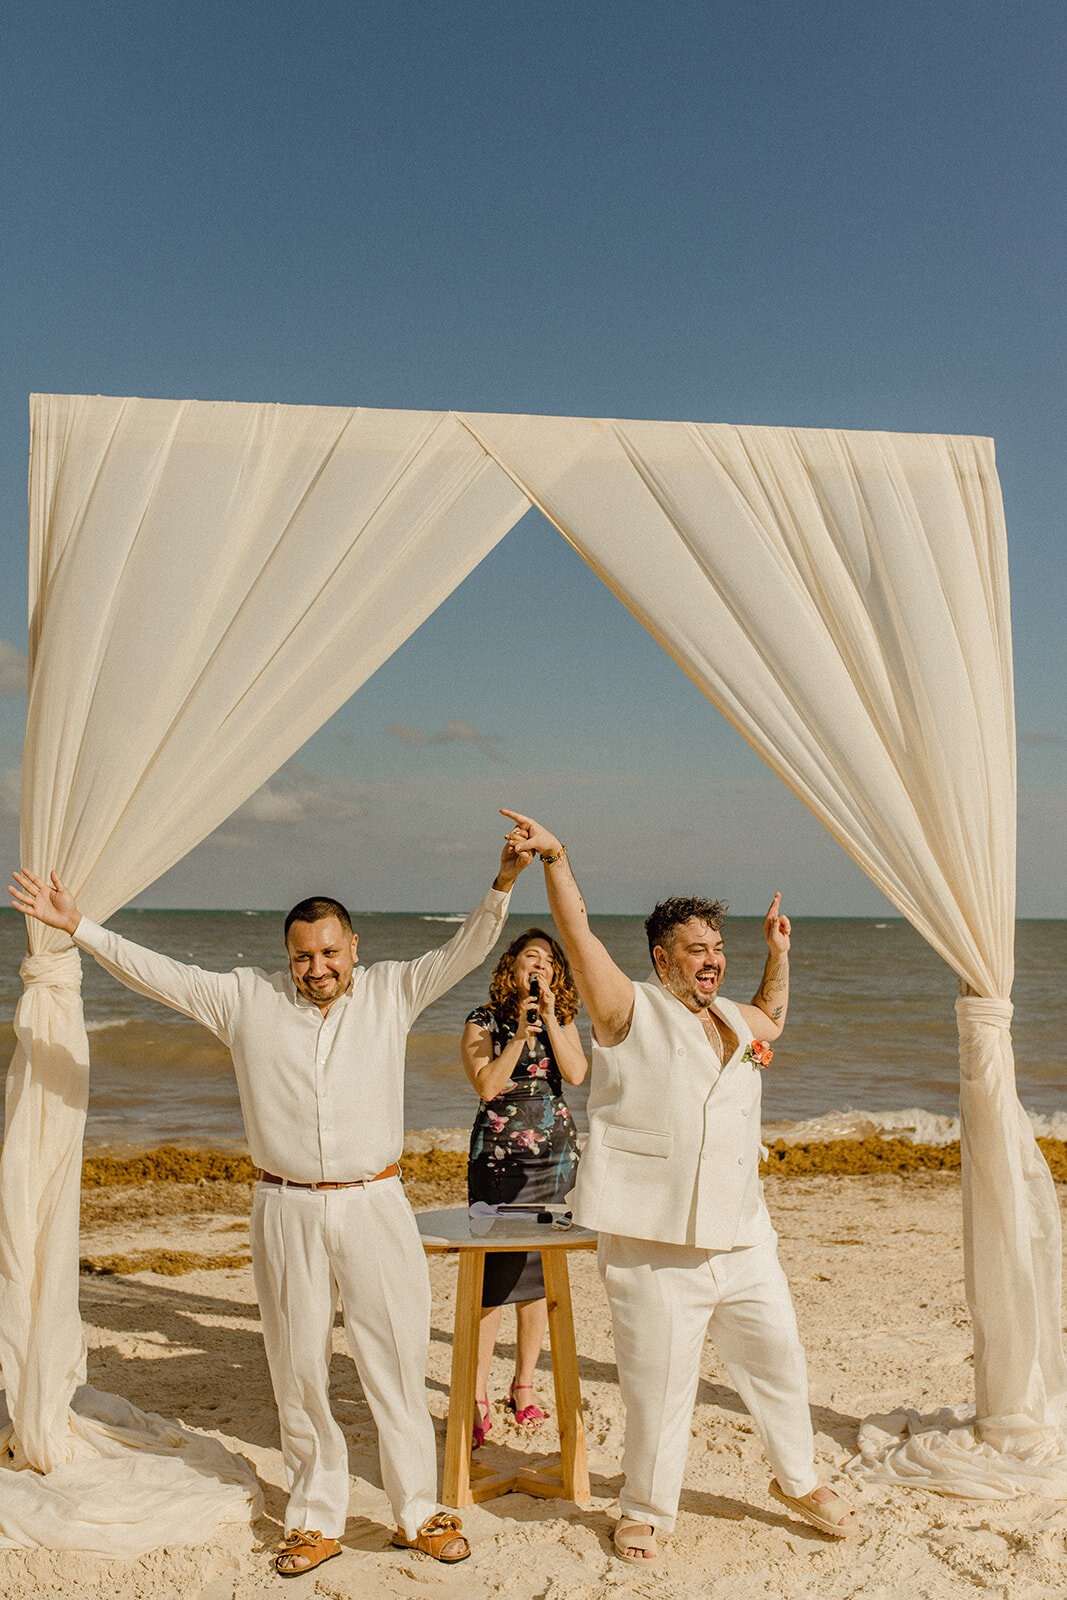 d-mexico-cancun-dreams-natura-resort-queer-lgbtq-wedding-details-ceremony-i-dos-46